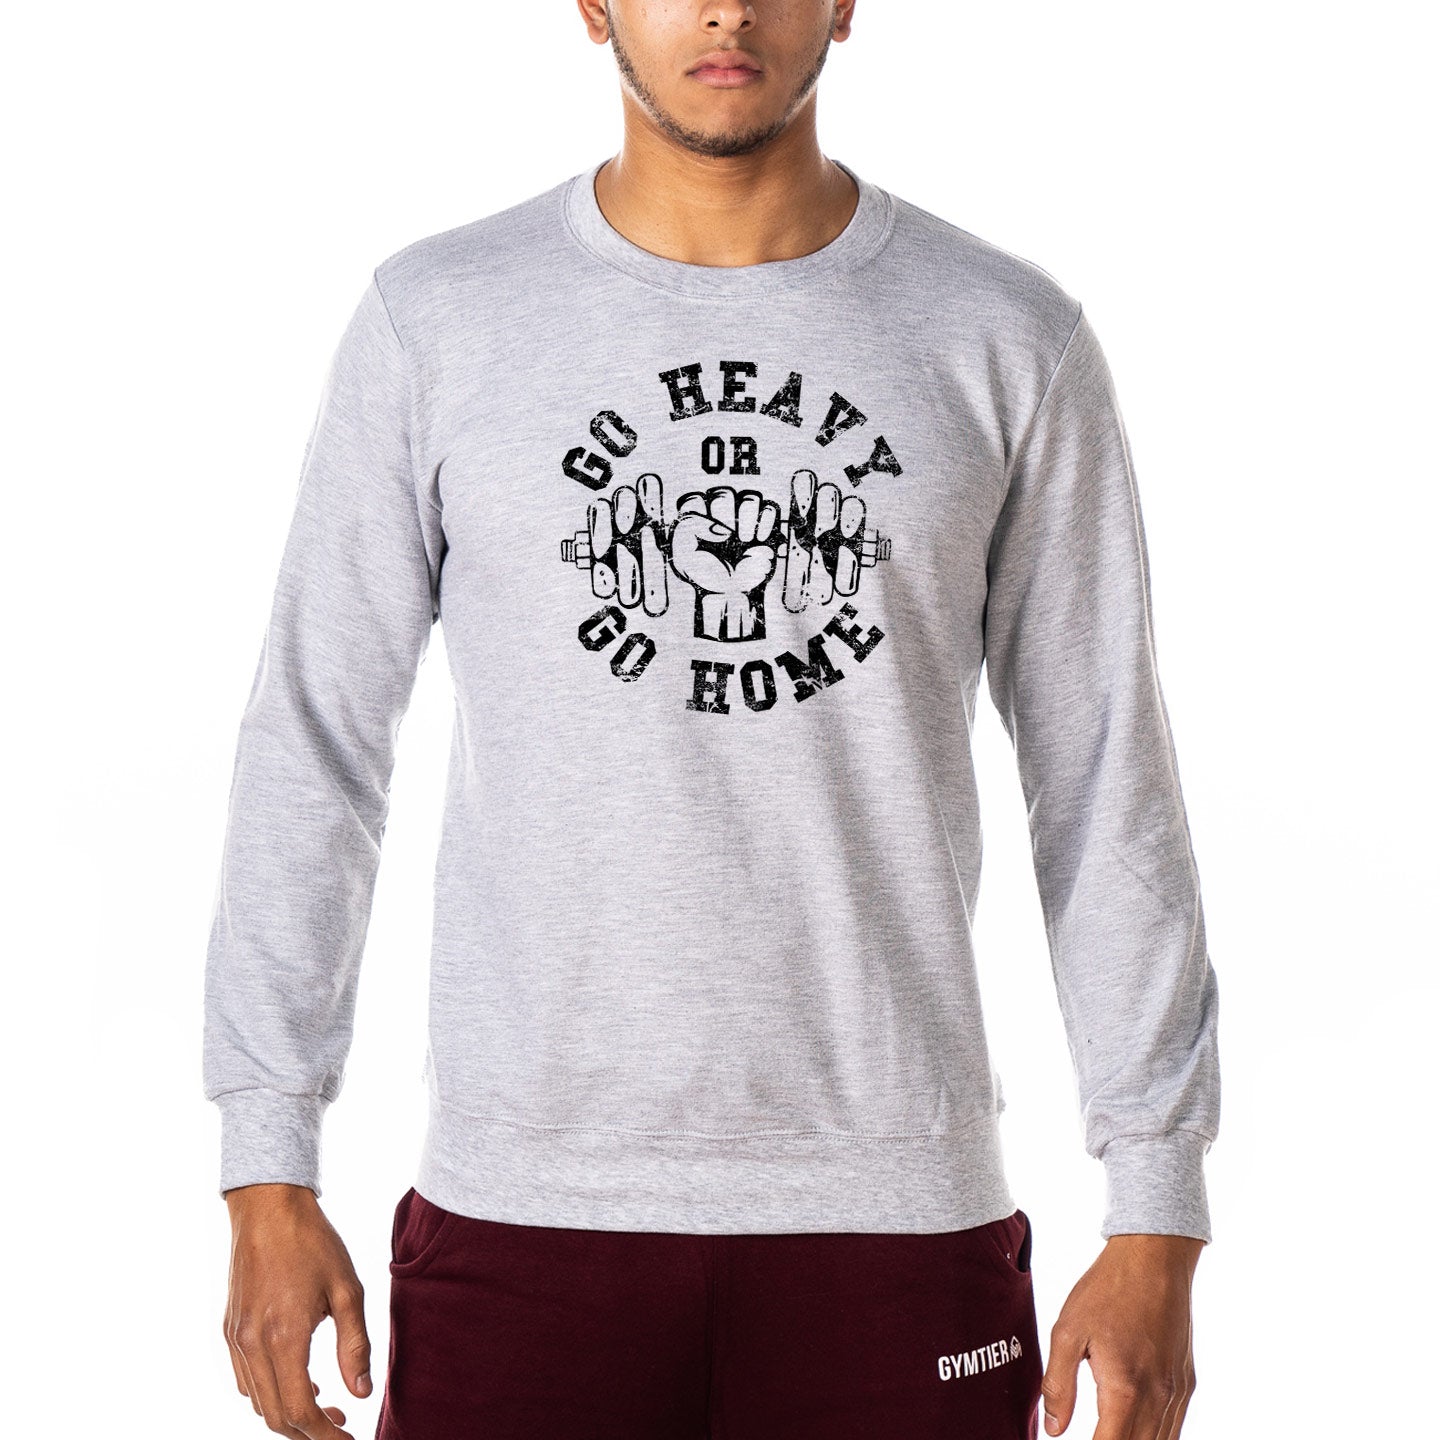 Go Heavy Or Go Home - Gym Sweatshirt